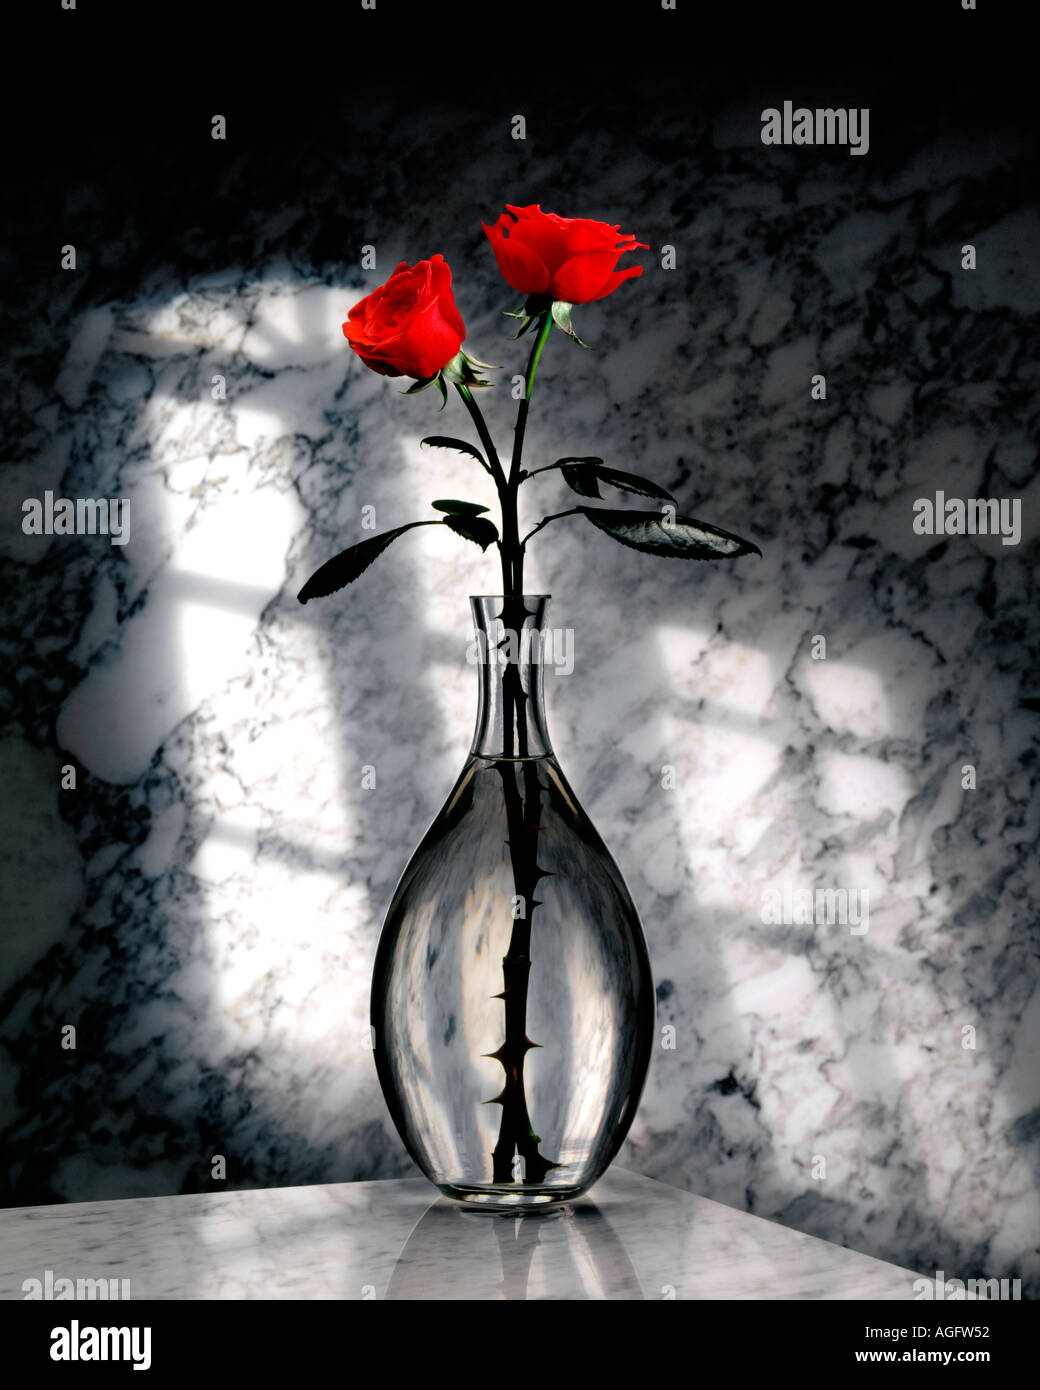 Zwei rote Rosen in einer Glasvase auf einem Marmor Hintergrund 2 Rosen Stockfoto